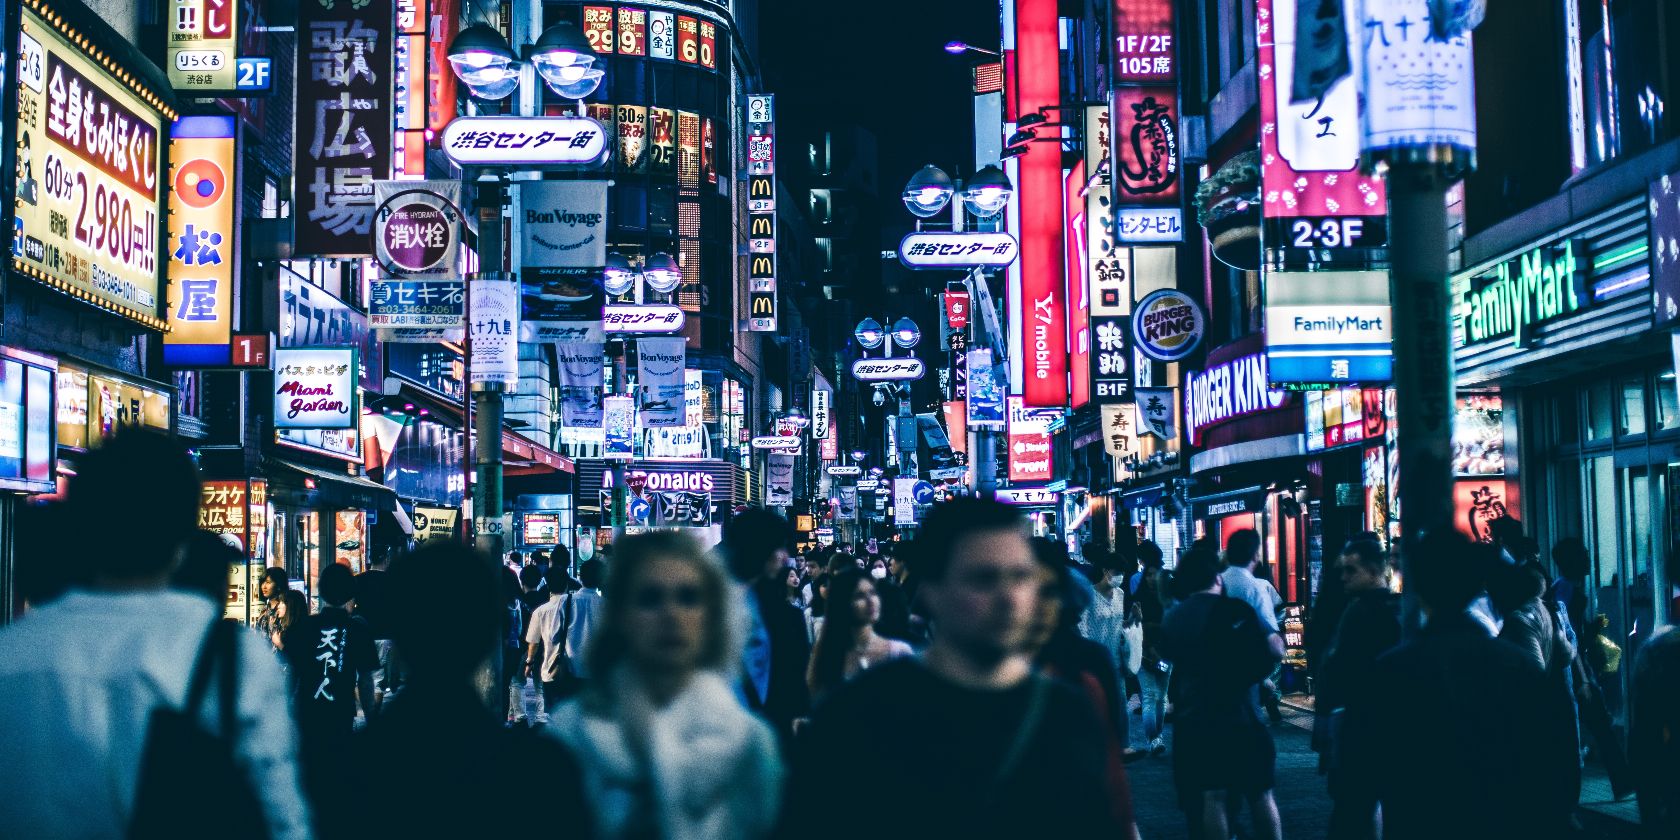 A street scene in Tokyo